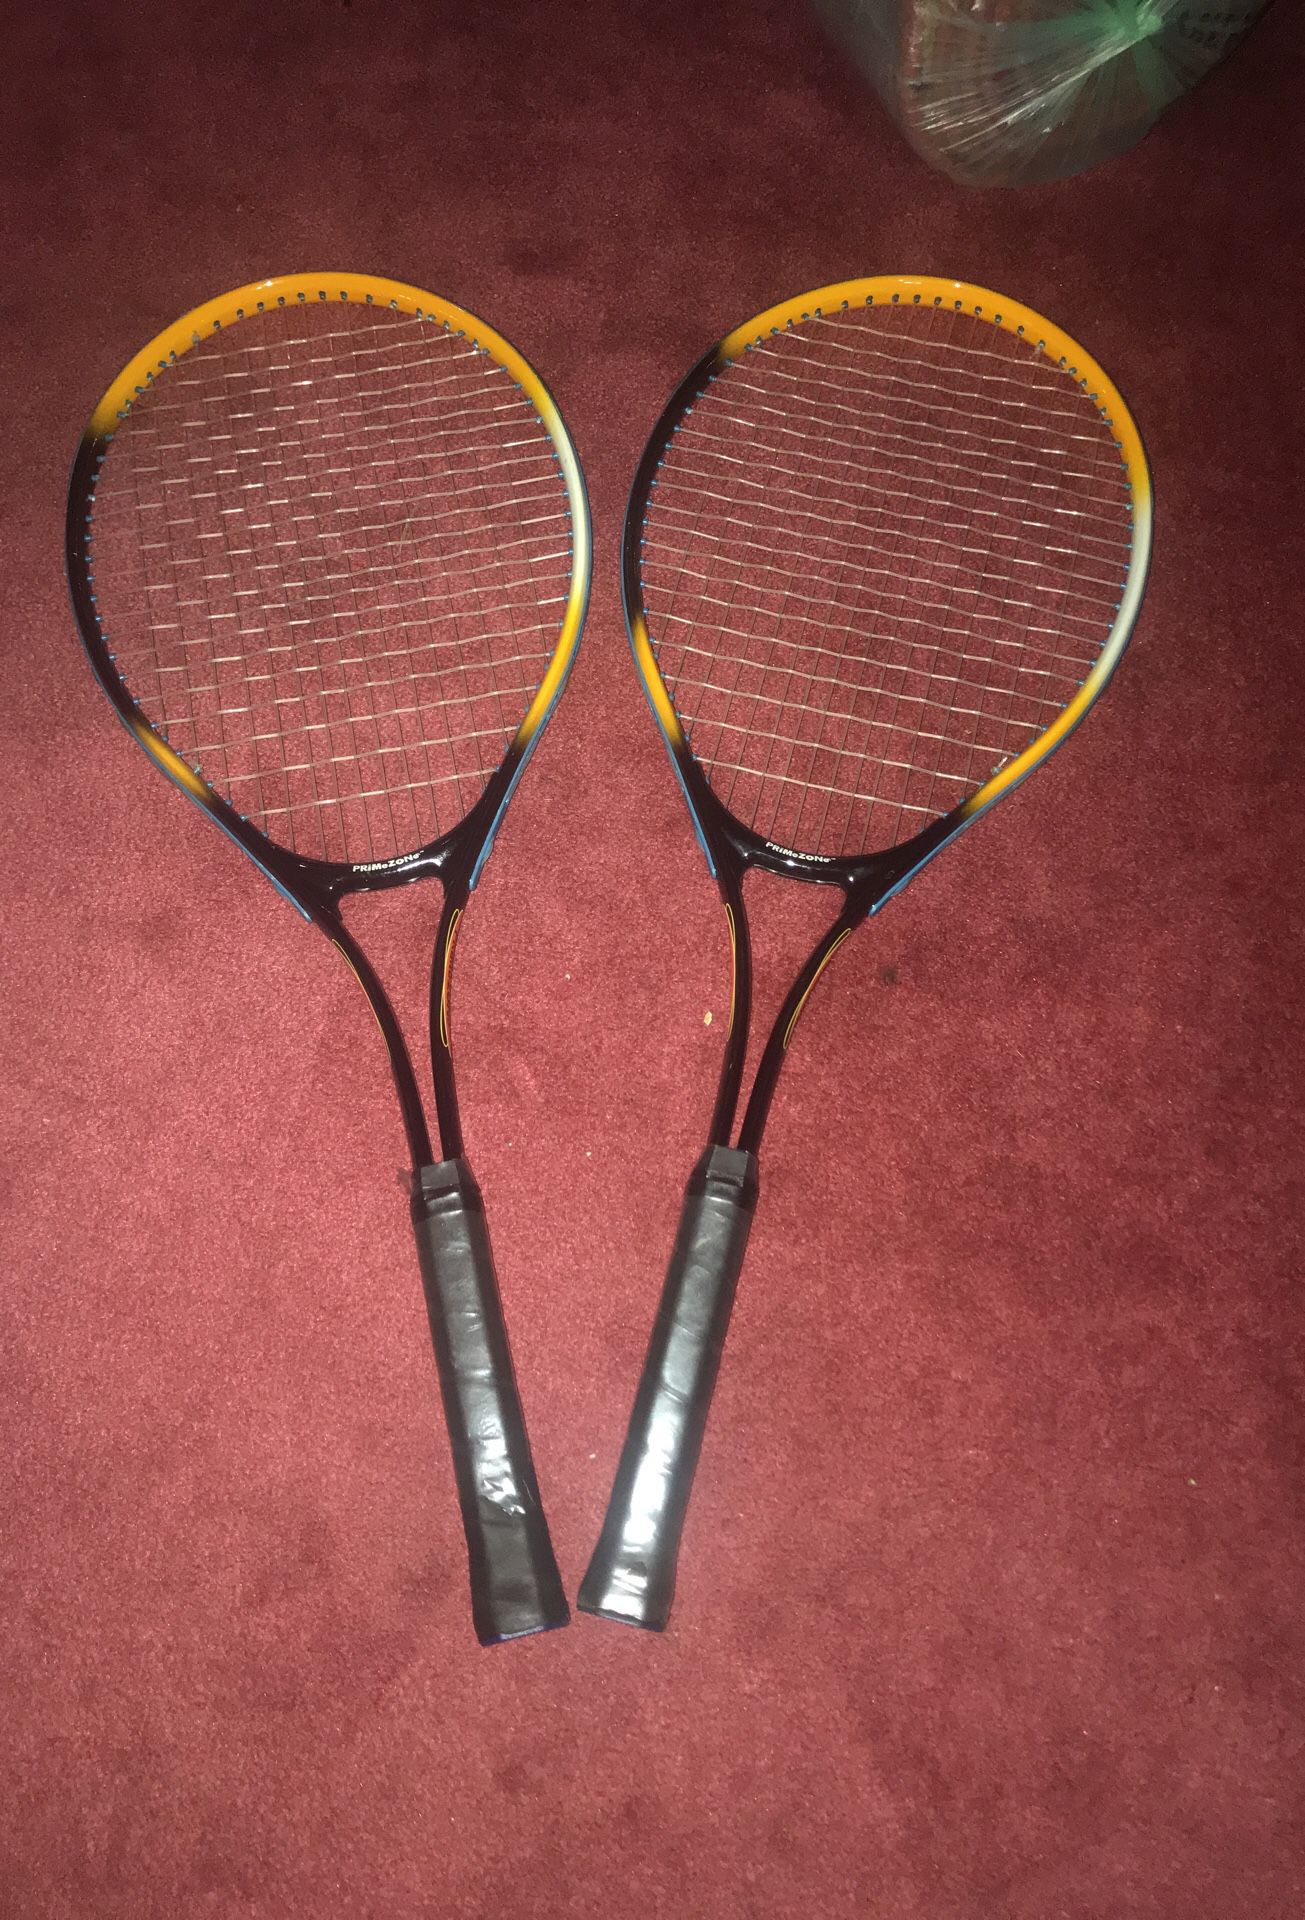 brand new tennis rackets